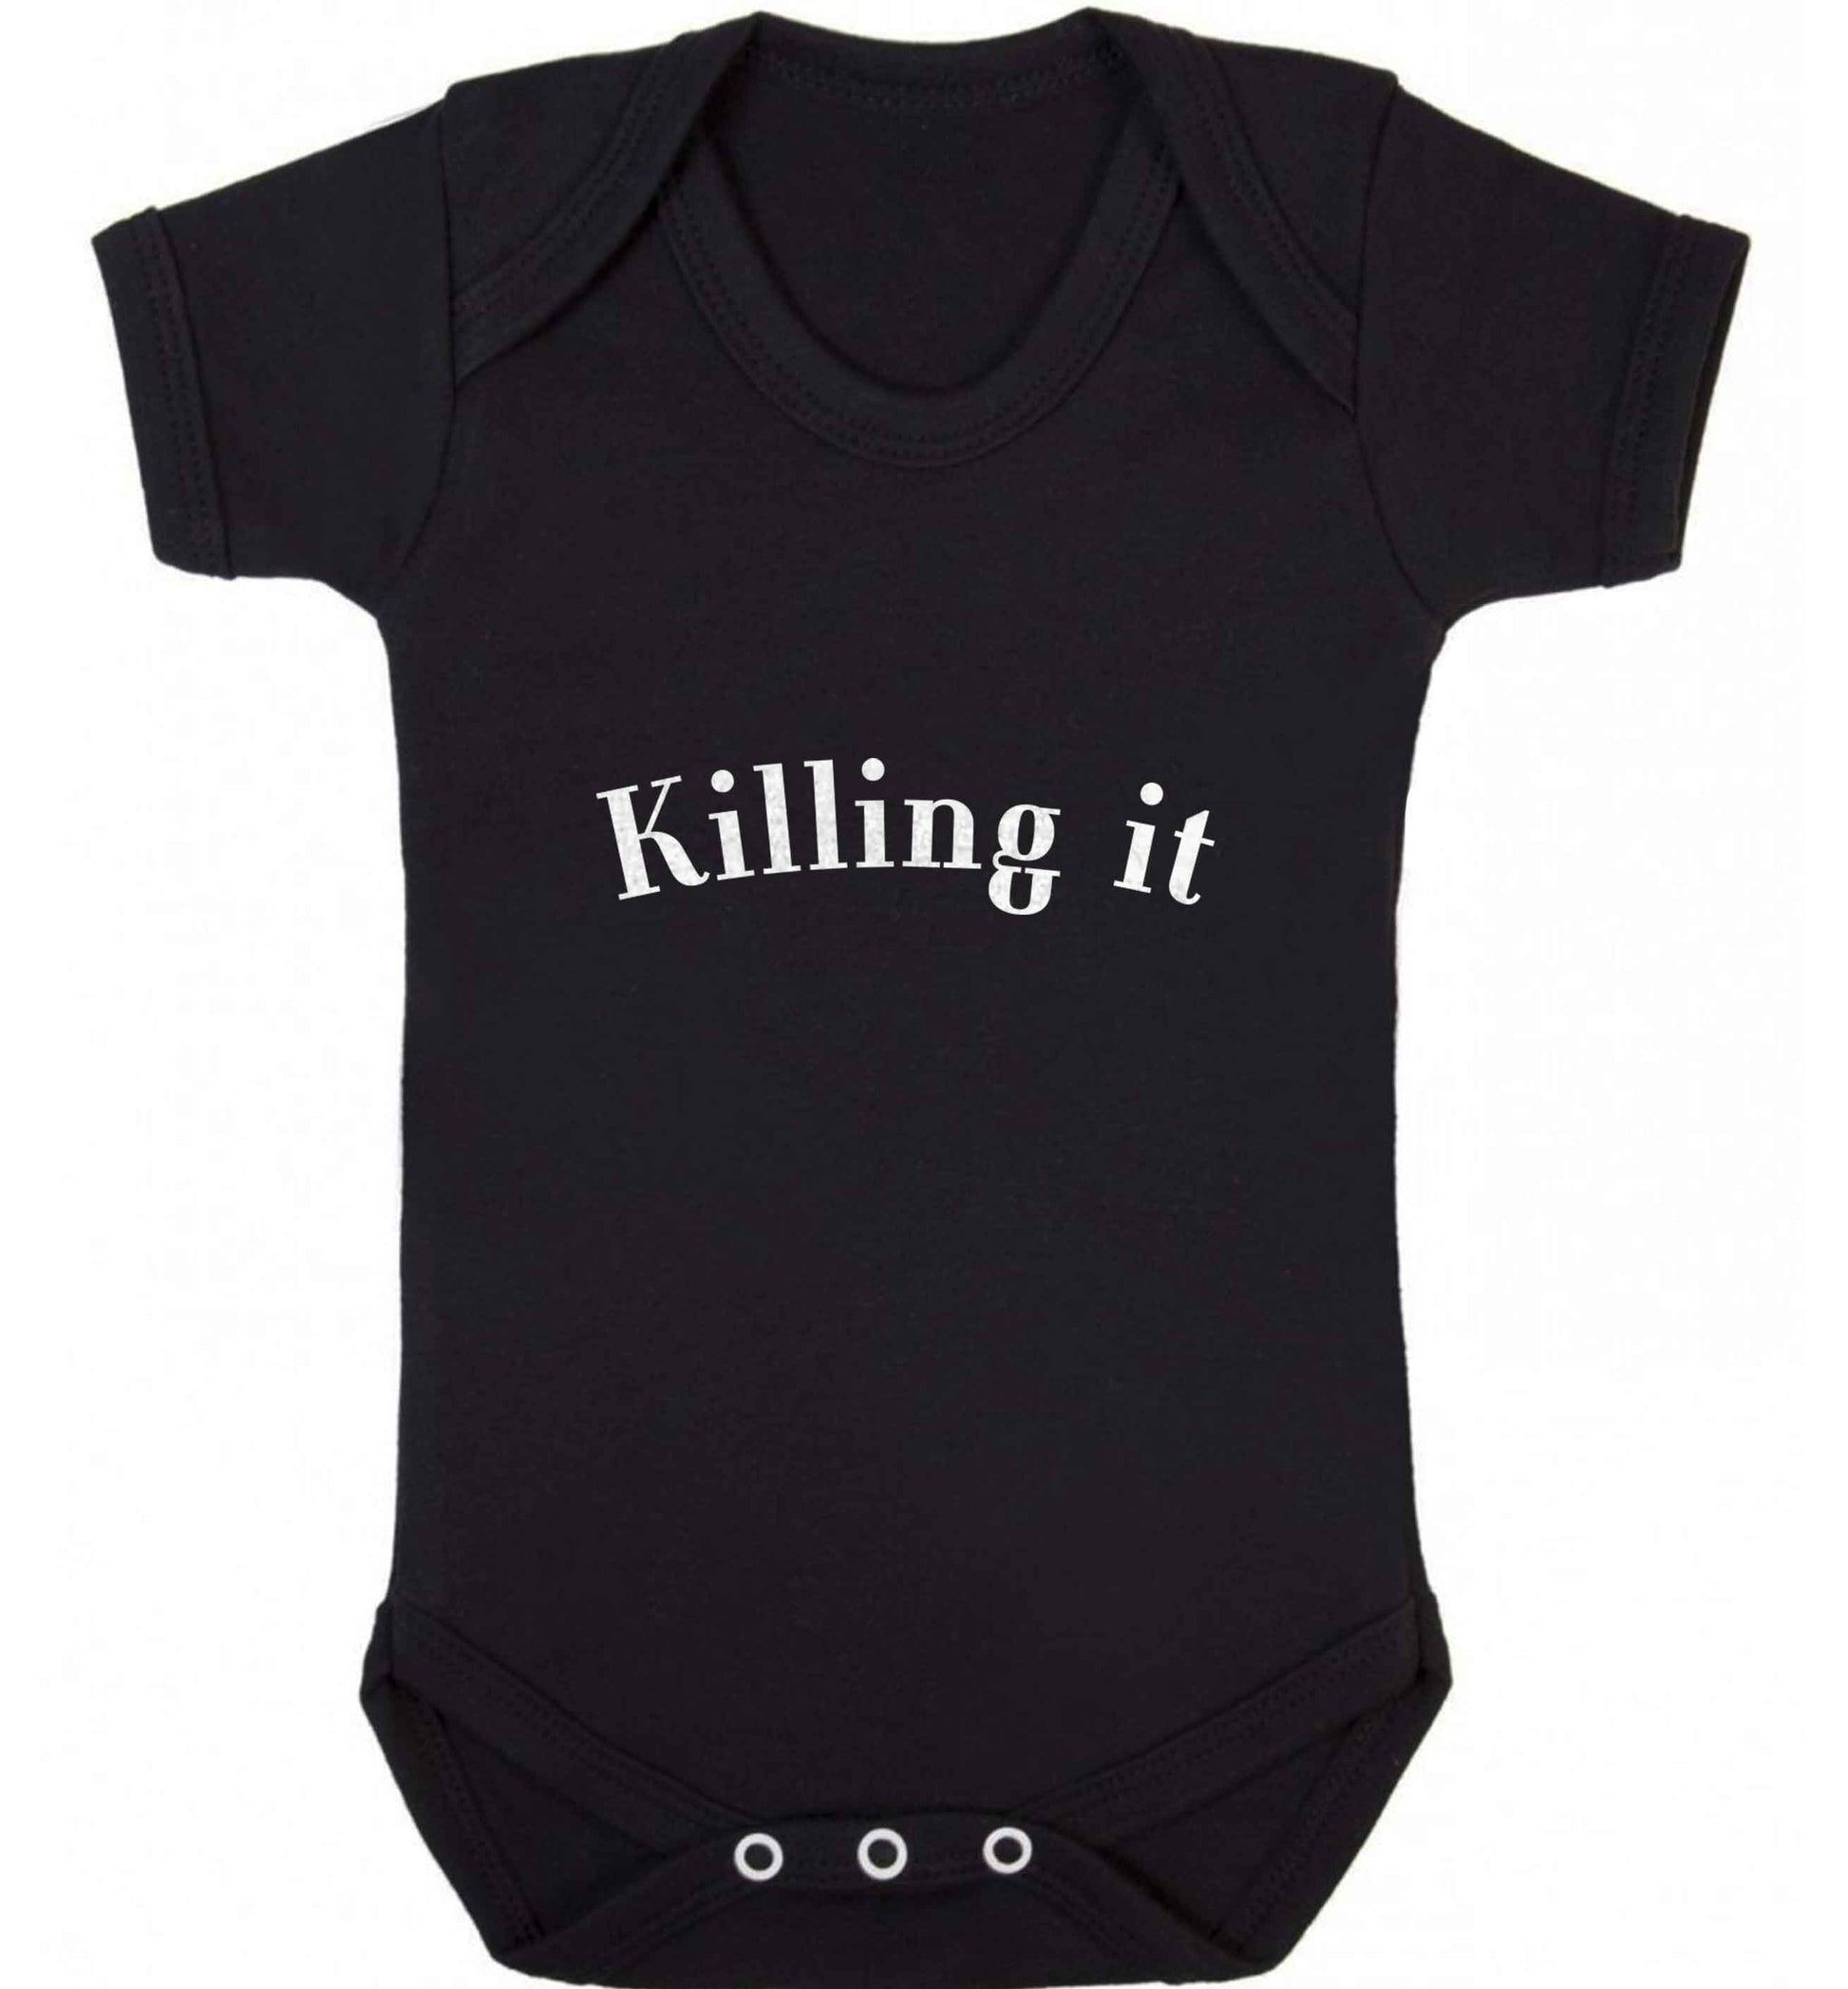 Killing it baby vest black 18-24 months